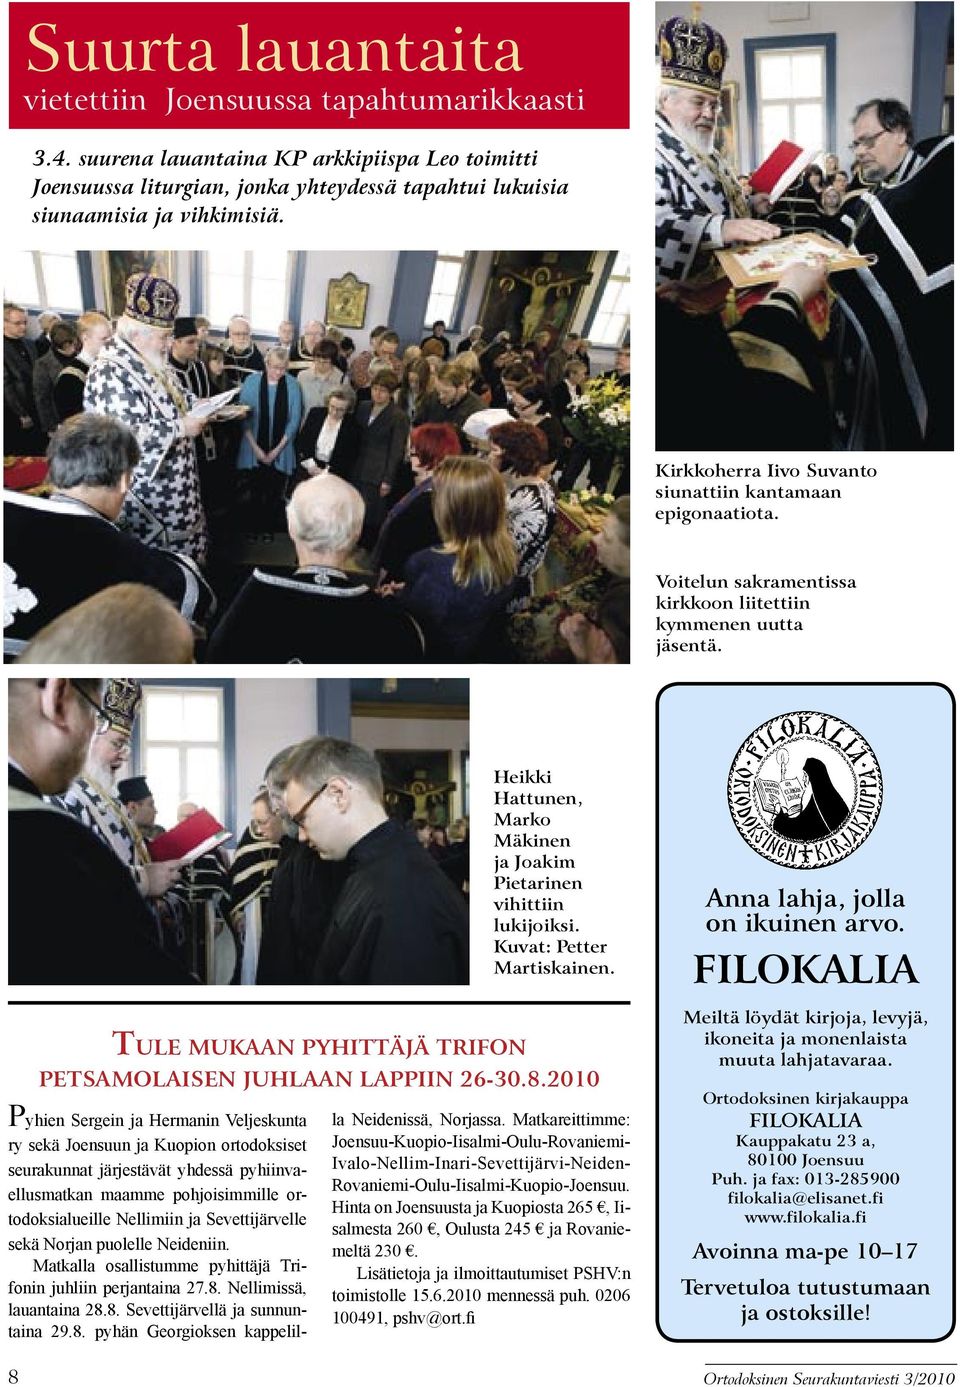 Pyhien Sergein ja Hermanin Veljeskunta ry sekä Joensuun ja Kuopion ortodoksiset seurakunnat järjestävät yhdessä pyhiinvaellusmatkan maamme pohjoisimmille ortodoksialueille Nellimiin ja